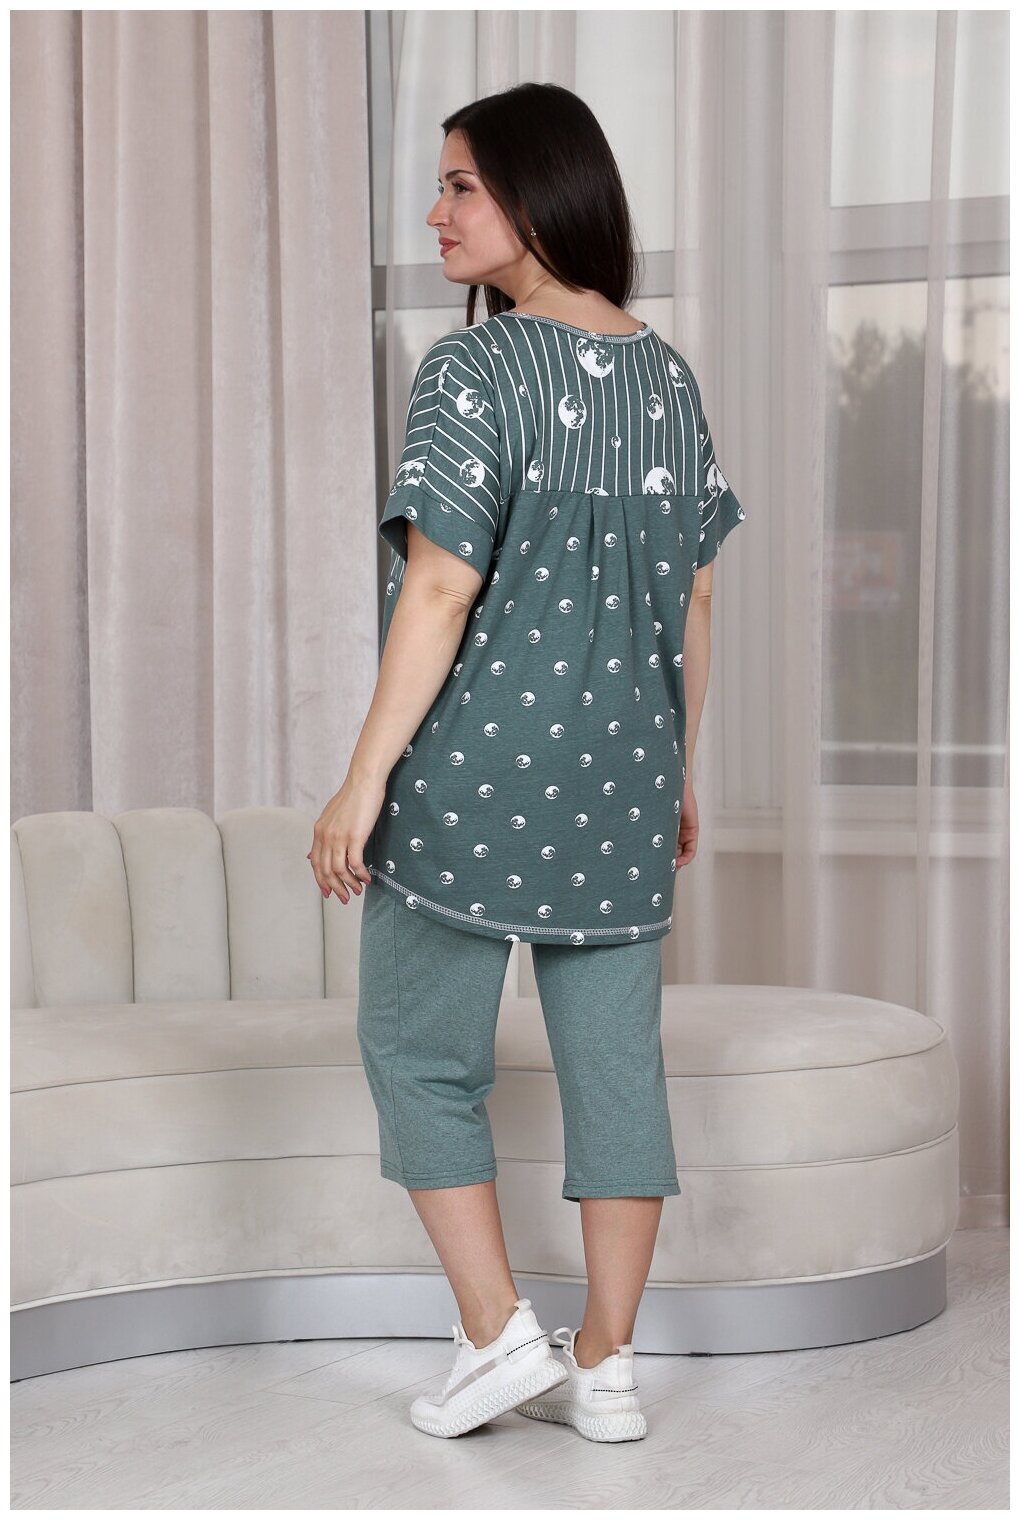 Комплект Натали, бриджи, футболка, капри, короткий рукав, пояс на резинке, карманы, трикотажная, размер 54, зеленый - фотография № 14